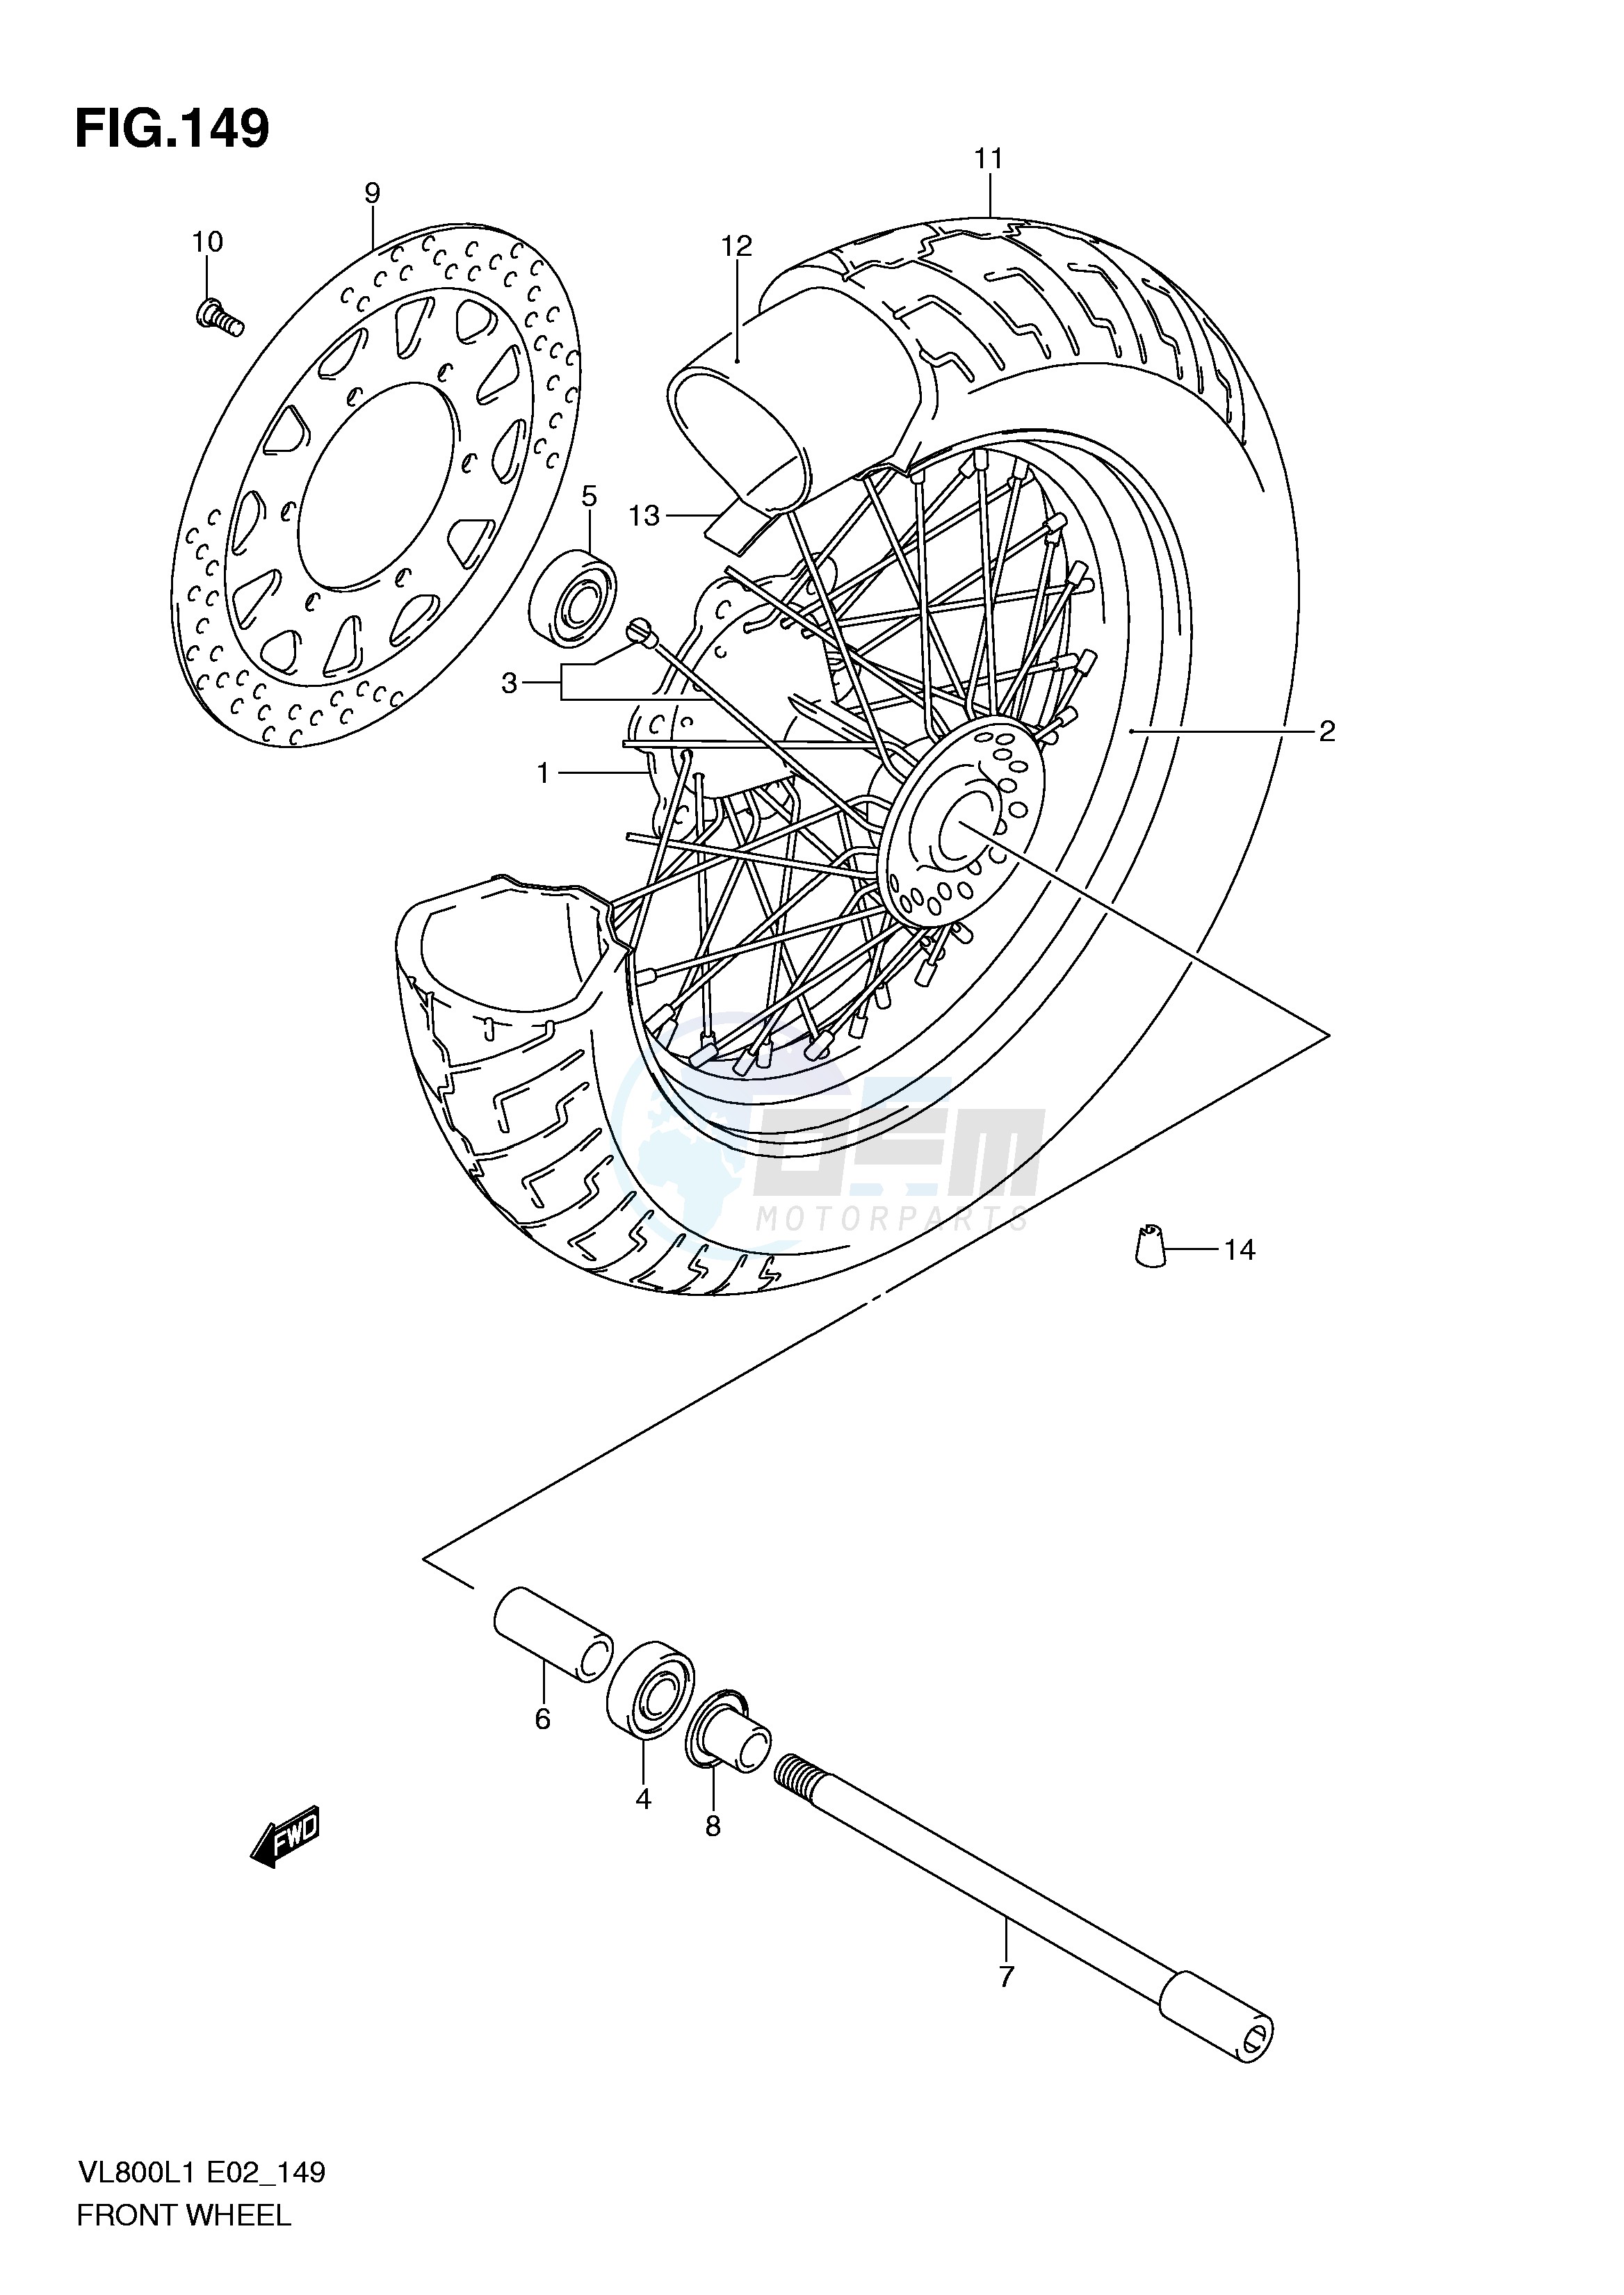 FRONT WHEEL (VL800L1 E19) blueprint